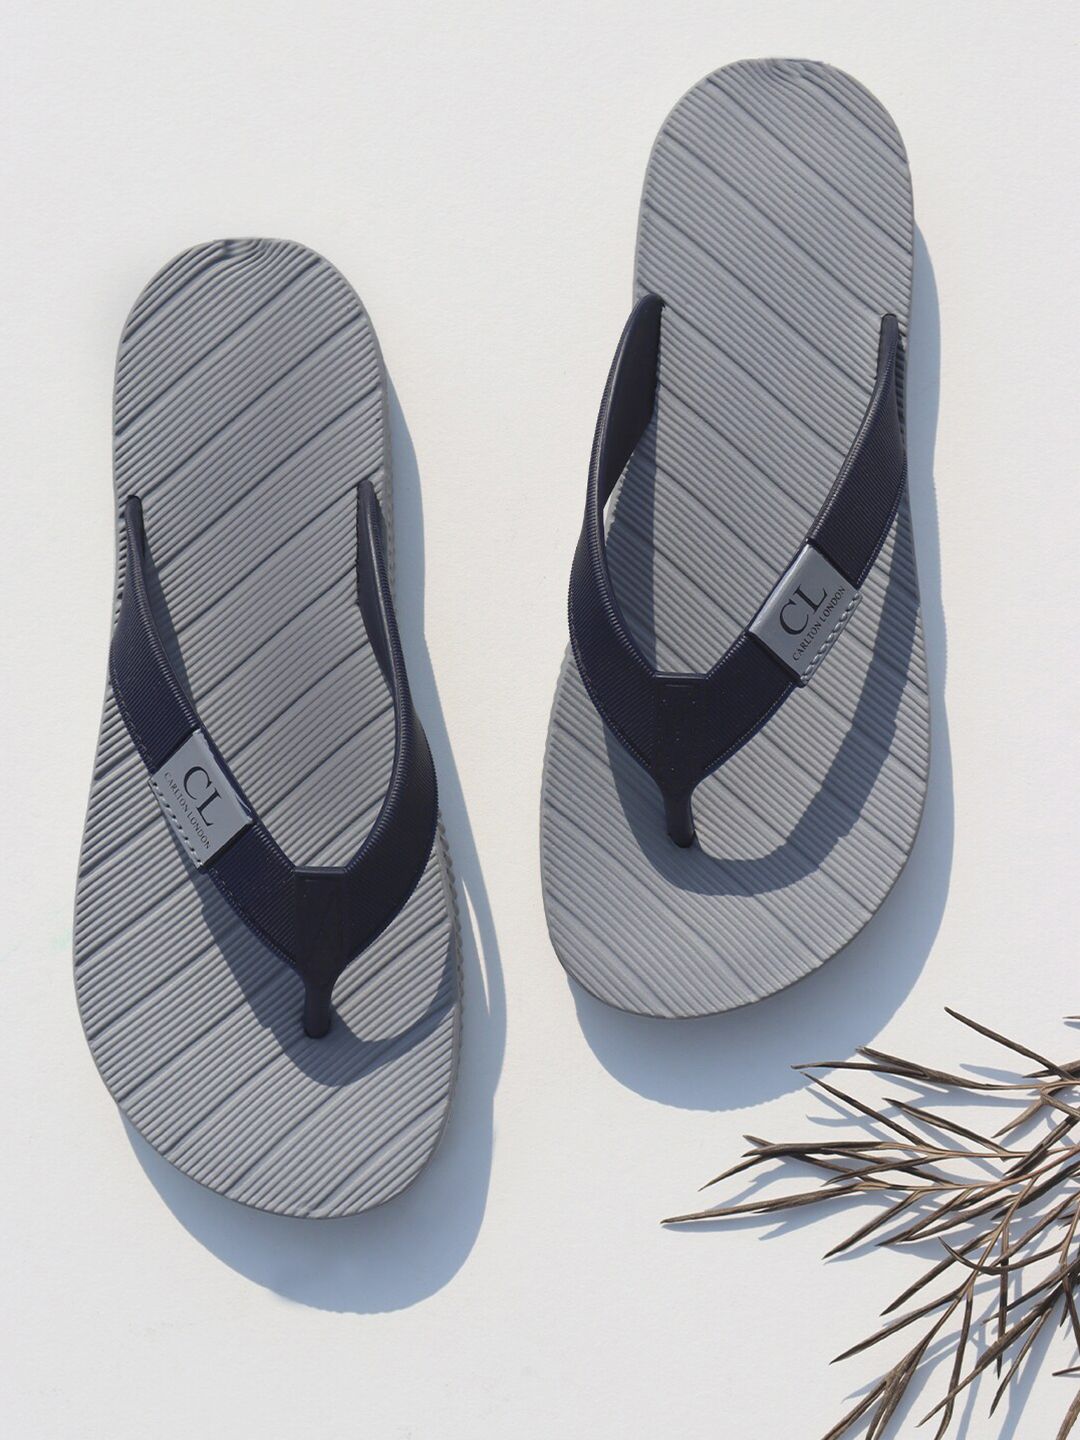 Carlton London Women Grey & Black Rubber Thong Flip-Flops Price in India